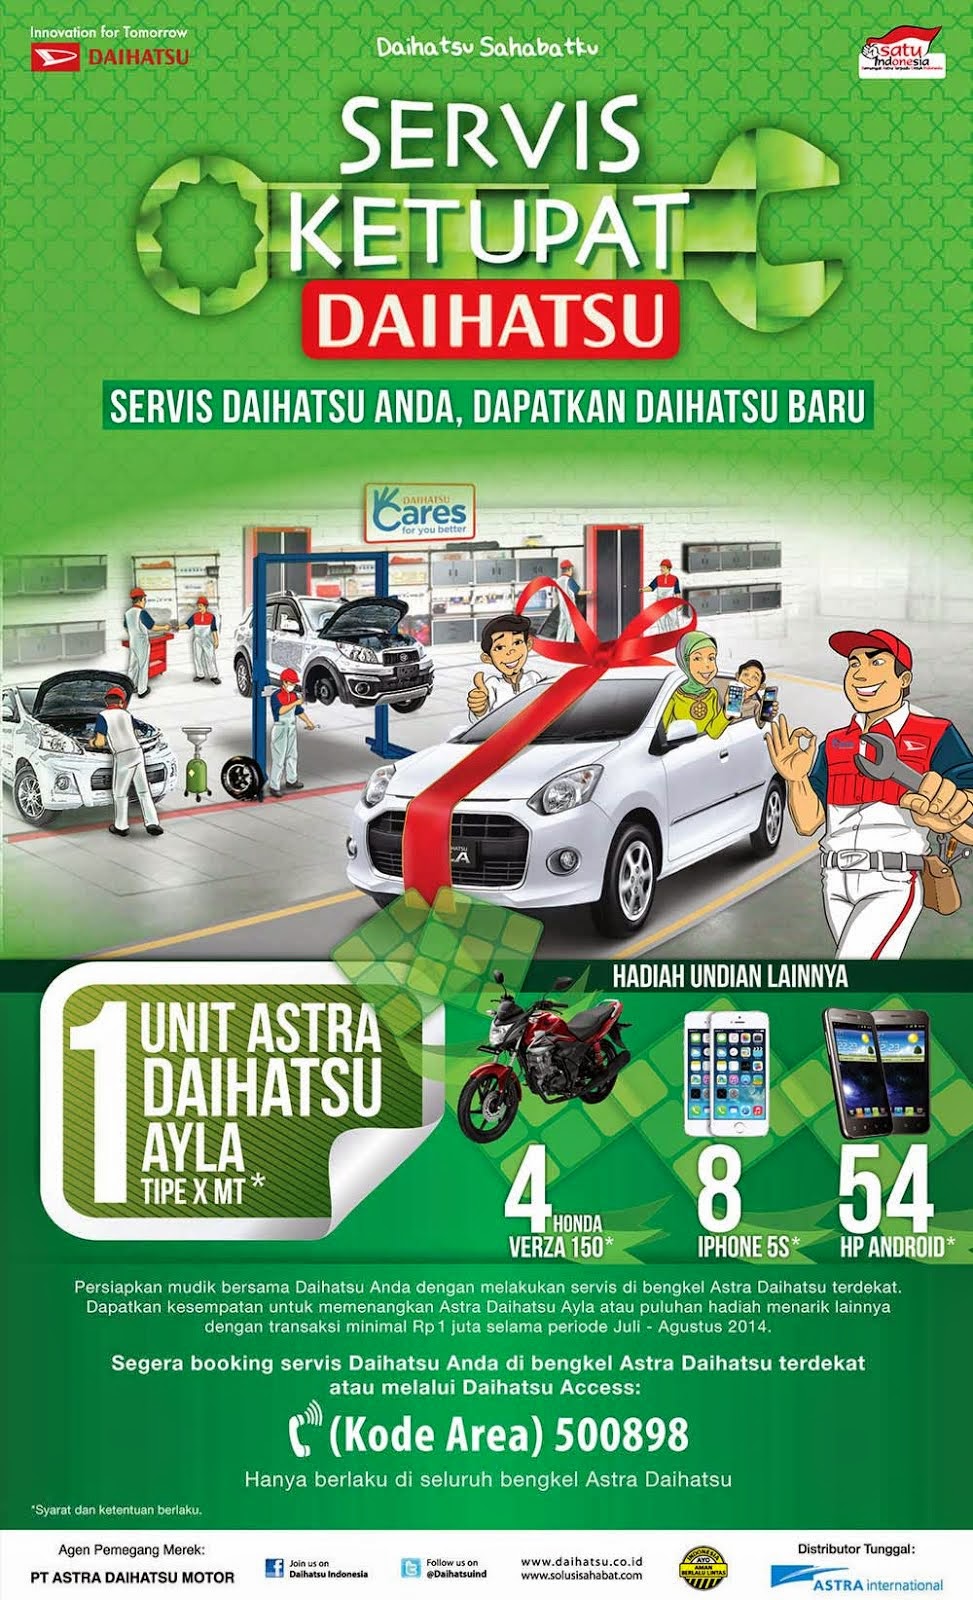 Harga Daihatsu Surabaya